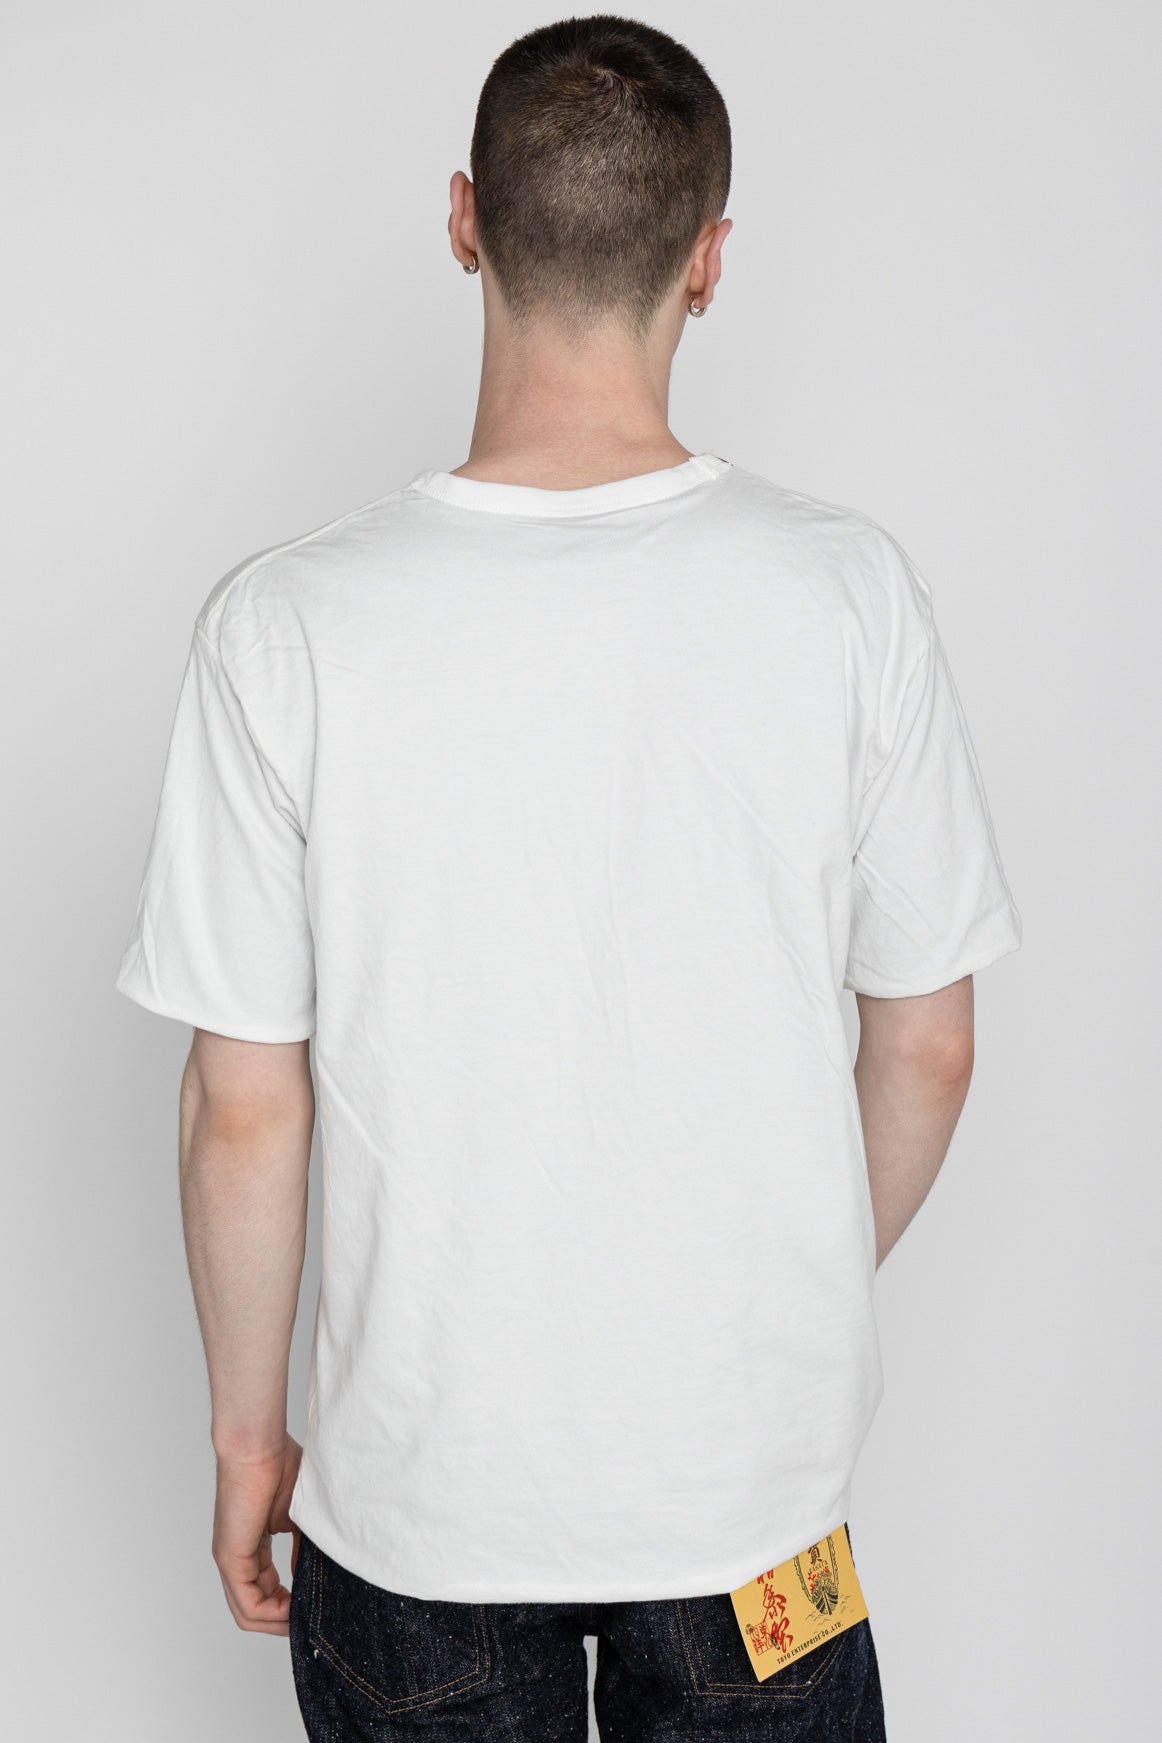 Whitesville 40/2 S/S Reversible Pocket T-Shirt - Blue x Off White